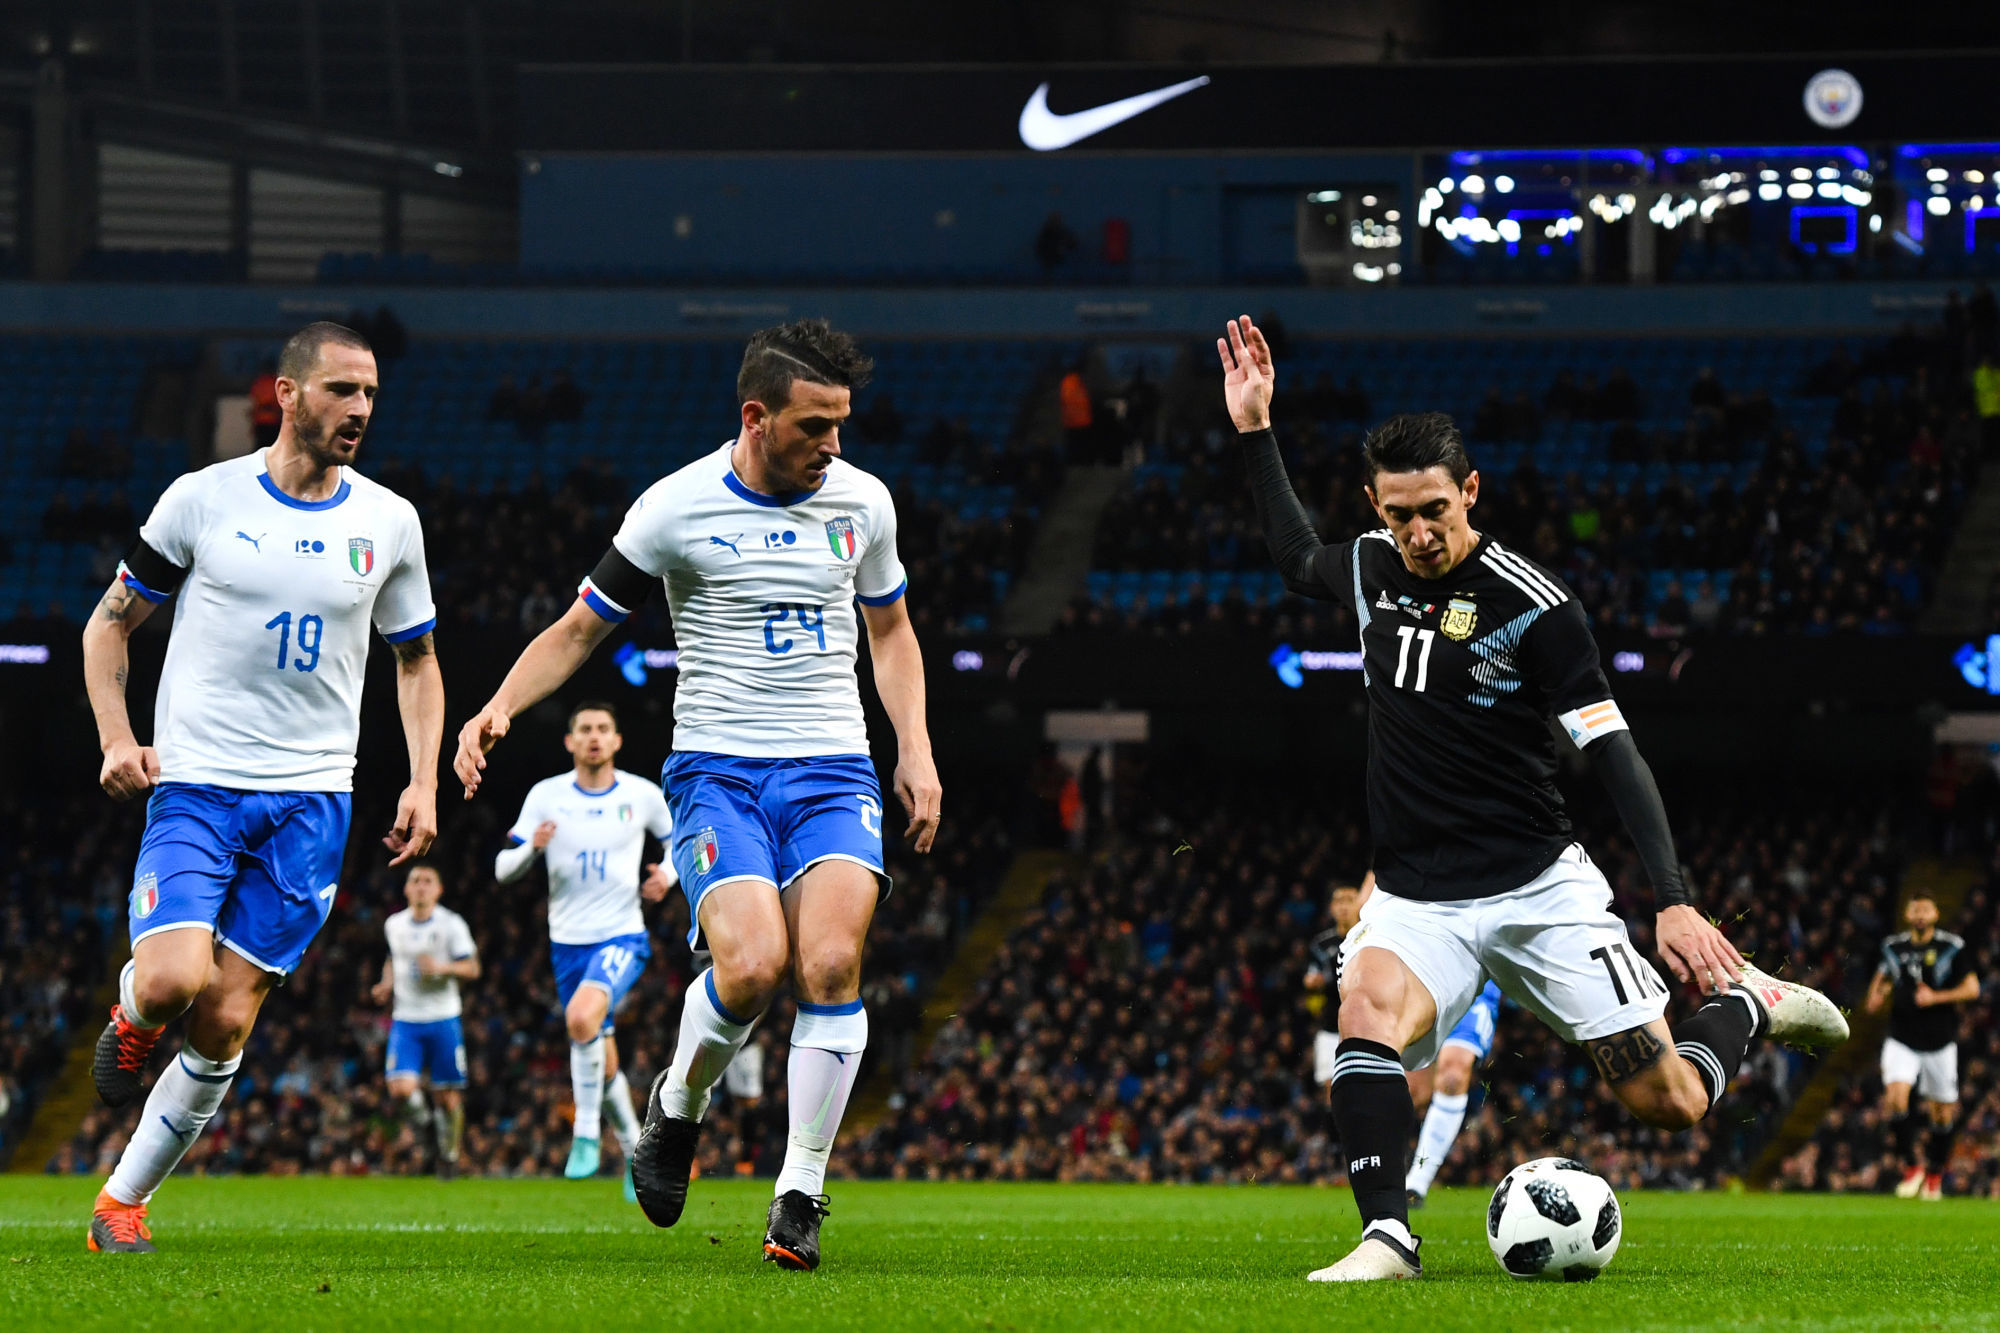 Finalissima : Le vainqueur de la Copa América, l'Argentine, affronte le champion d'Europe, l'Italie - un choc en direct !